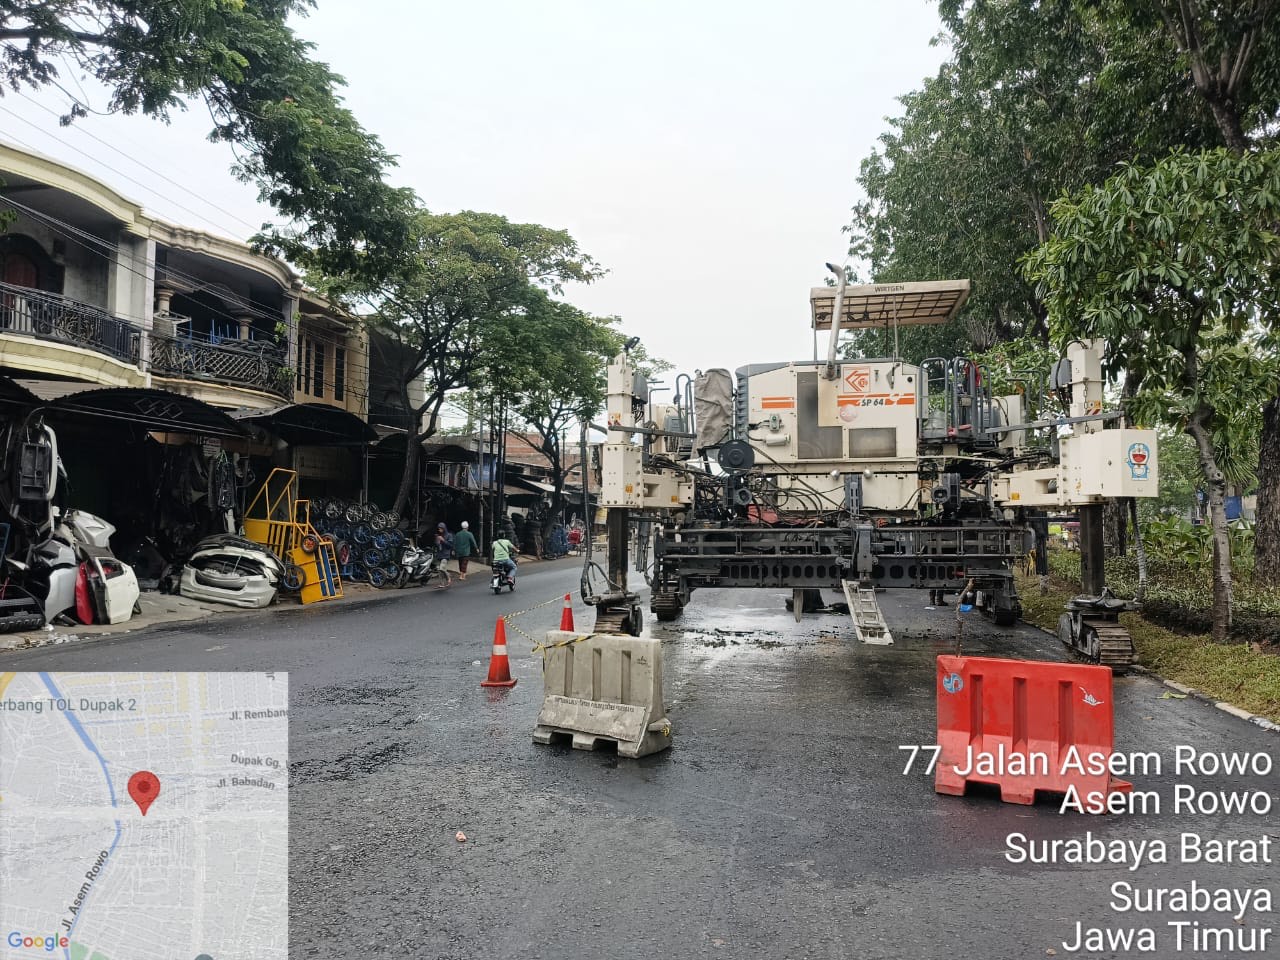 Pemkot Surabaya Prioritaskan Keamanan dan Efisiensi Lalu Lintas dalam Betonisasi Jalan Dupak